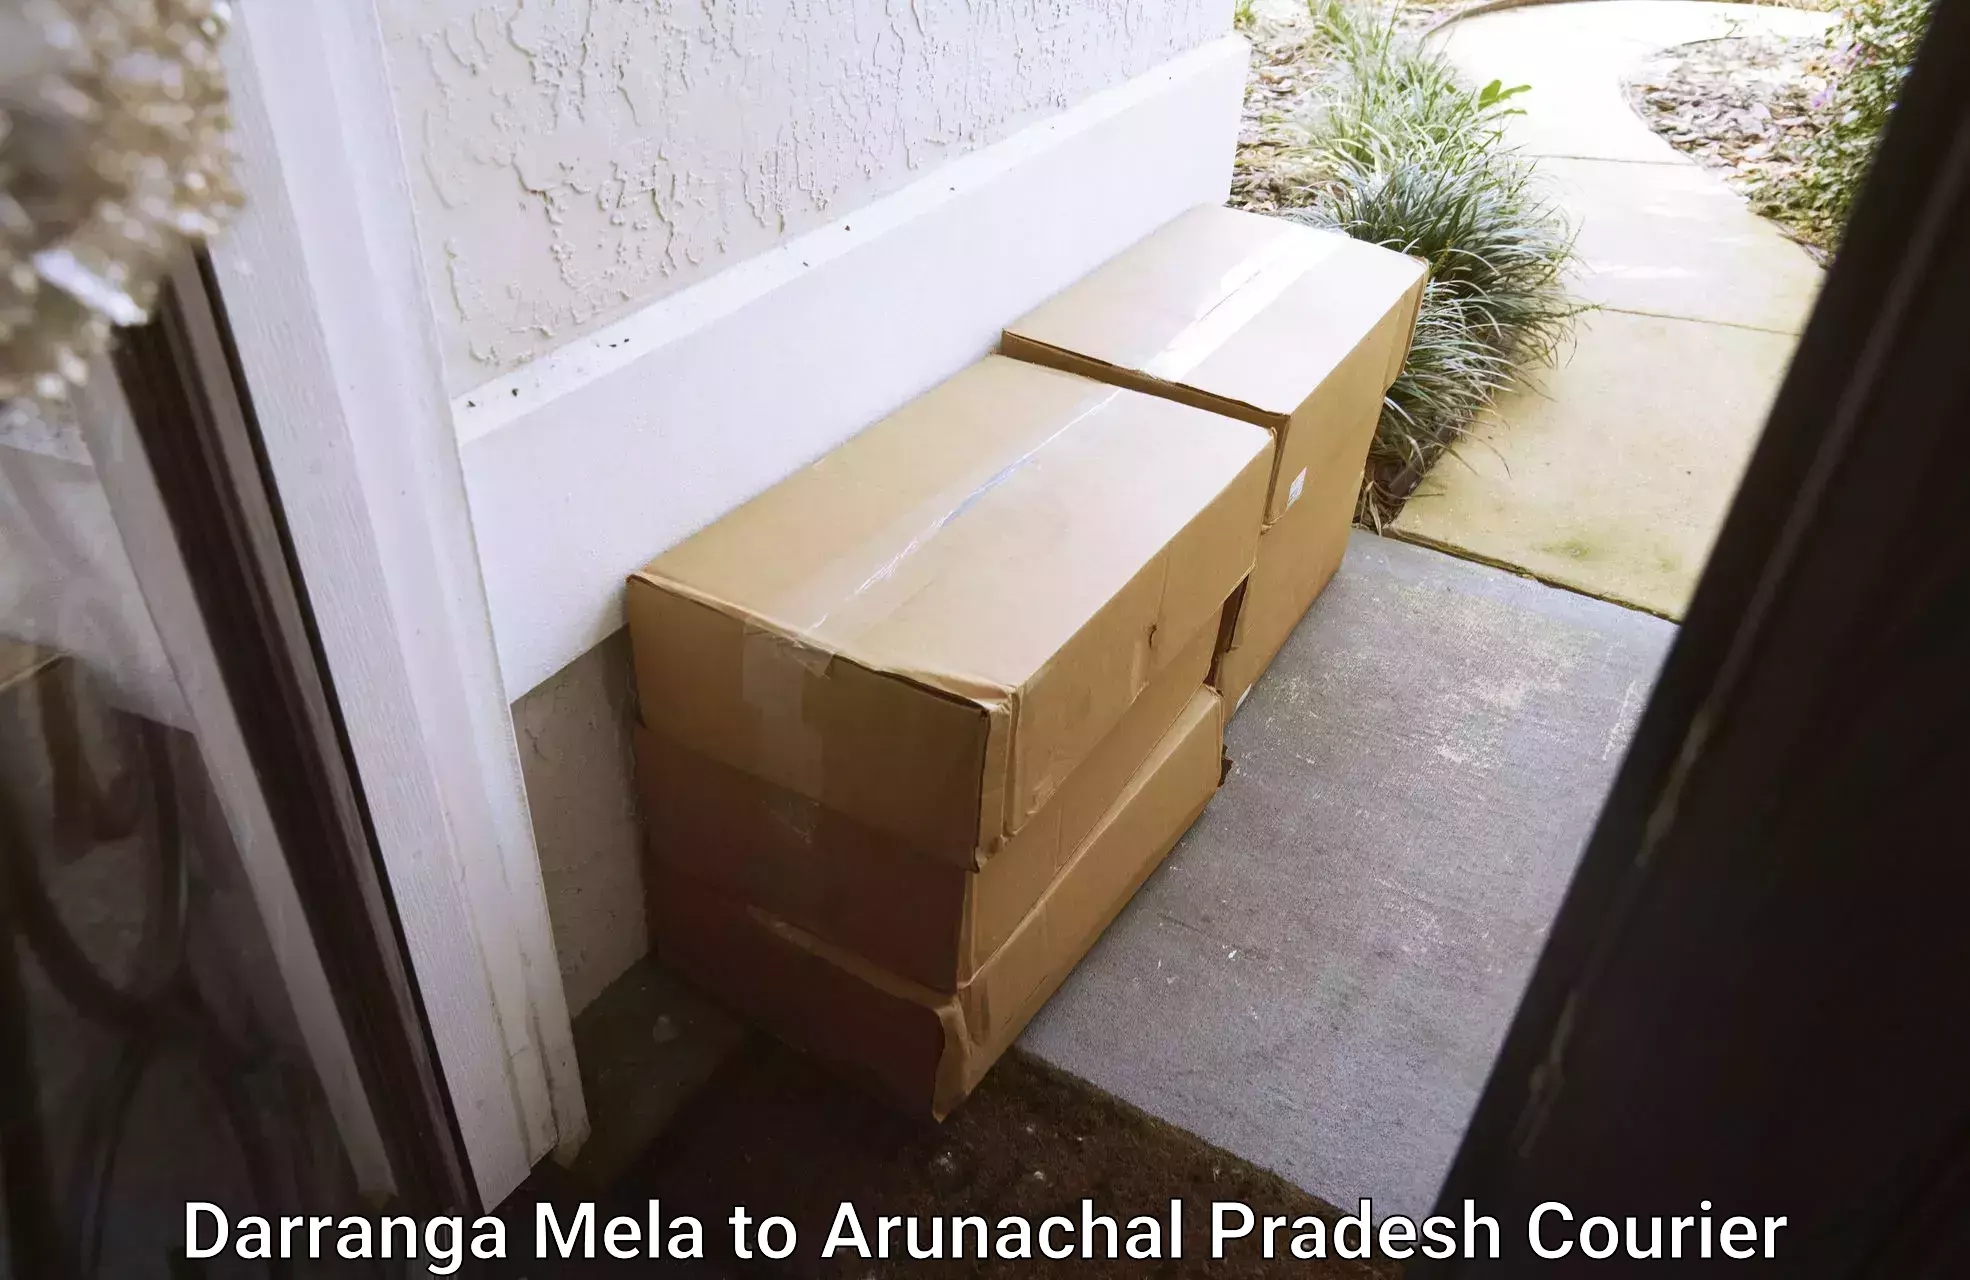 Reliable logistics providers Darranga Mela to Itanagar